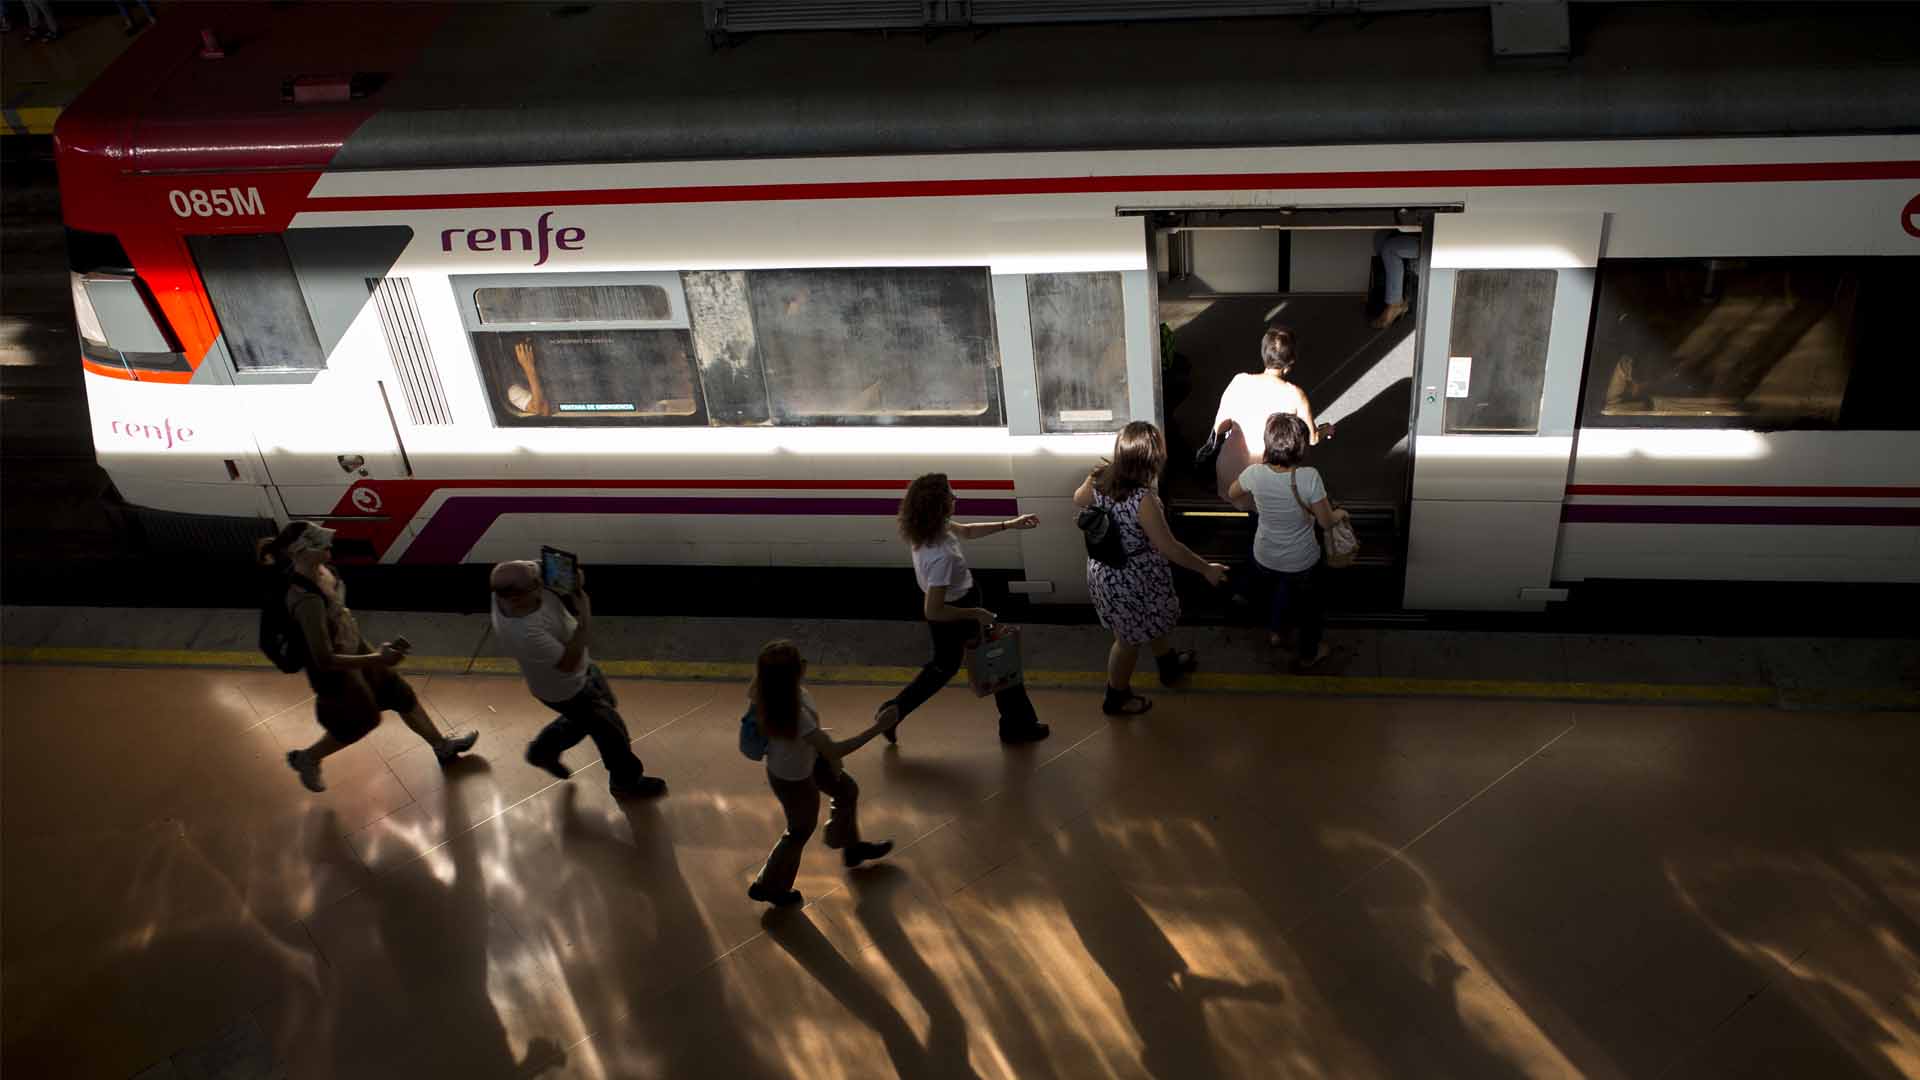 Время остановилось поезд. Испанские поезда Renfe. Остановился поезд. Поезда Renfe в Испании. Машинист остановил поезд.